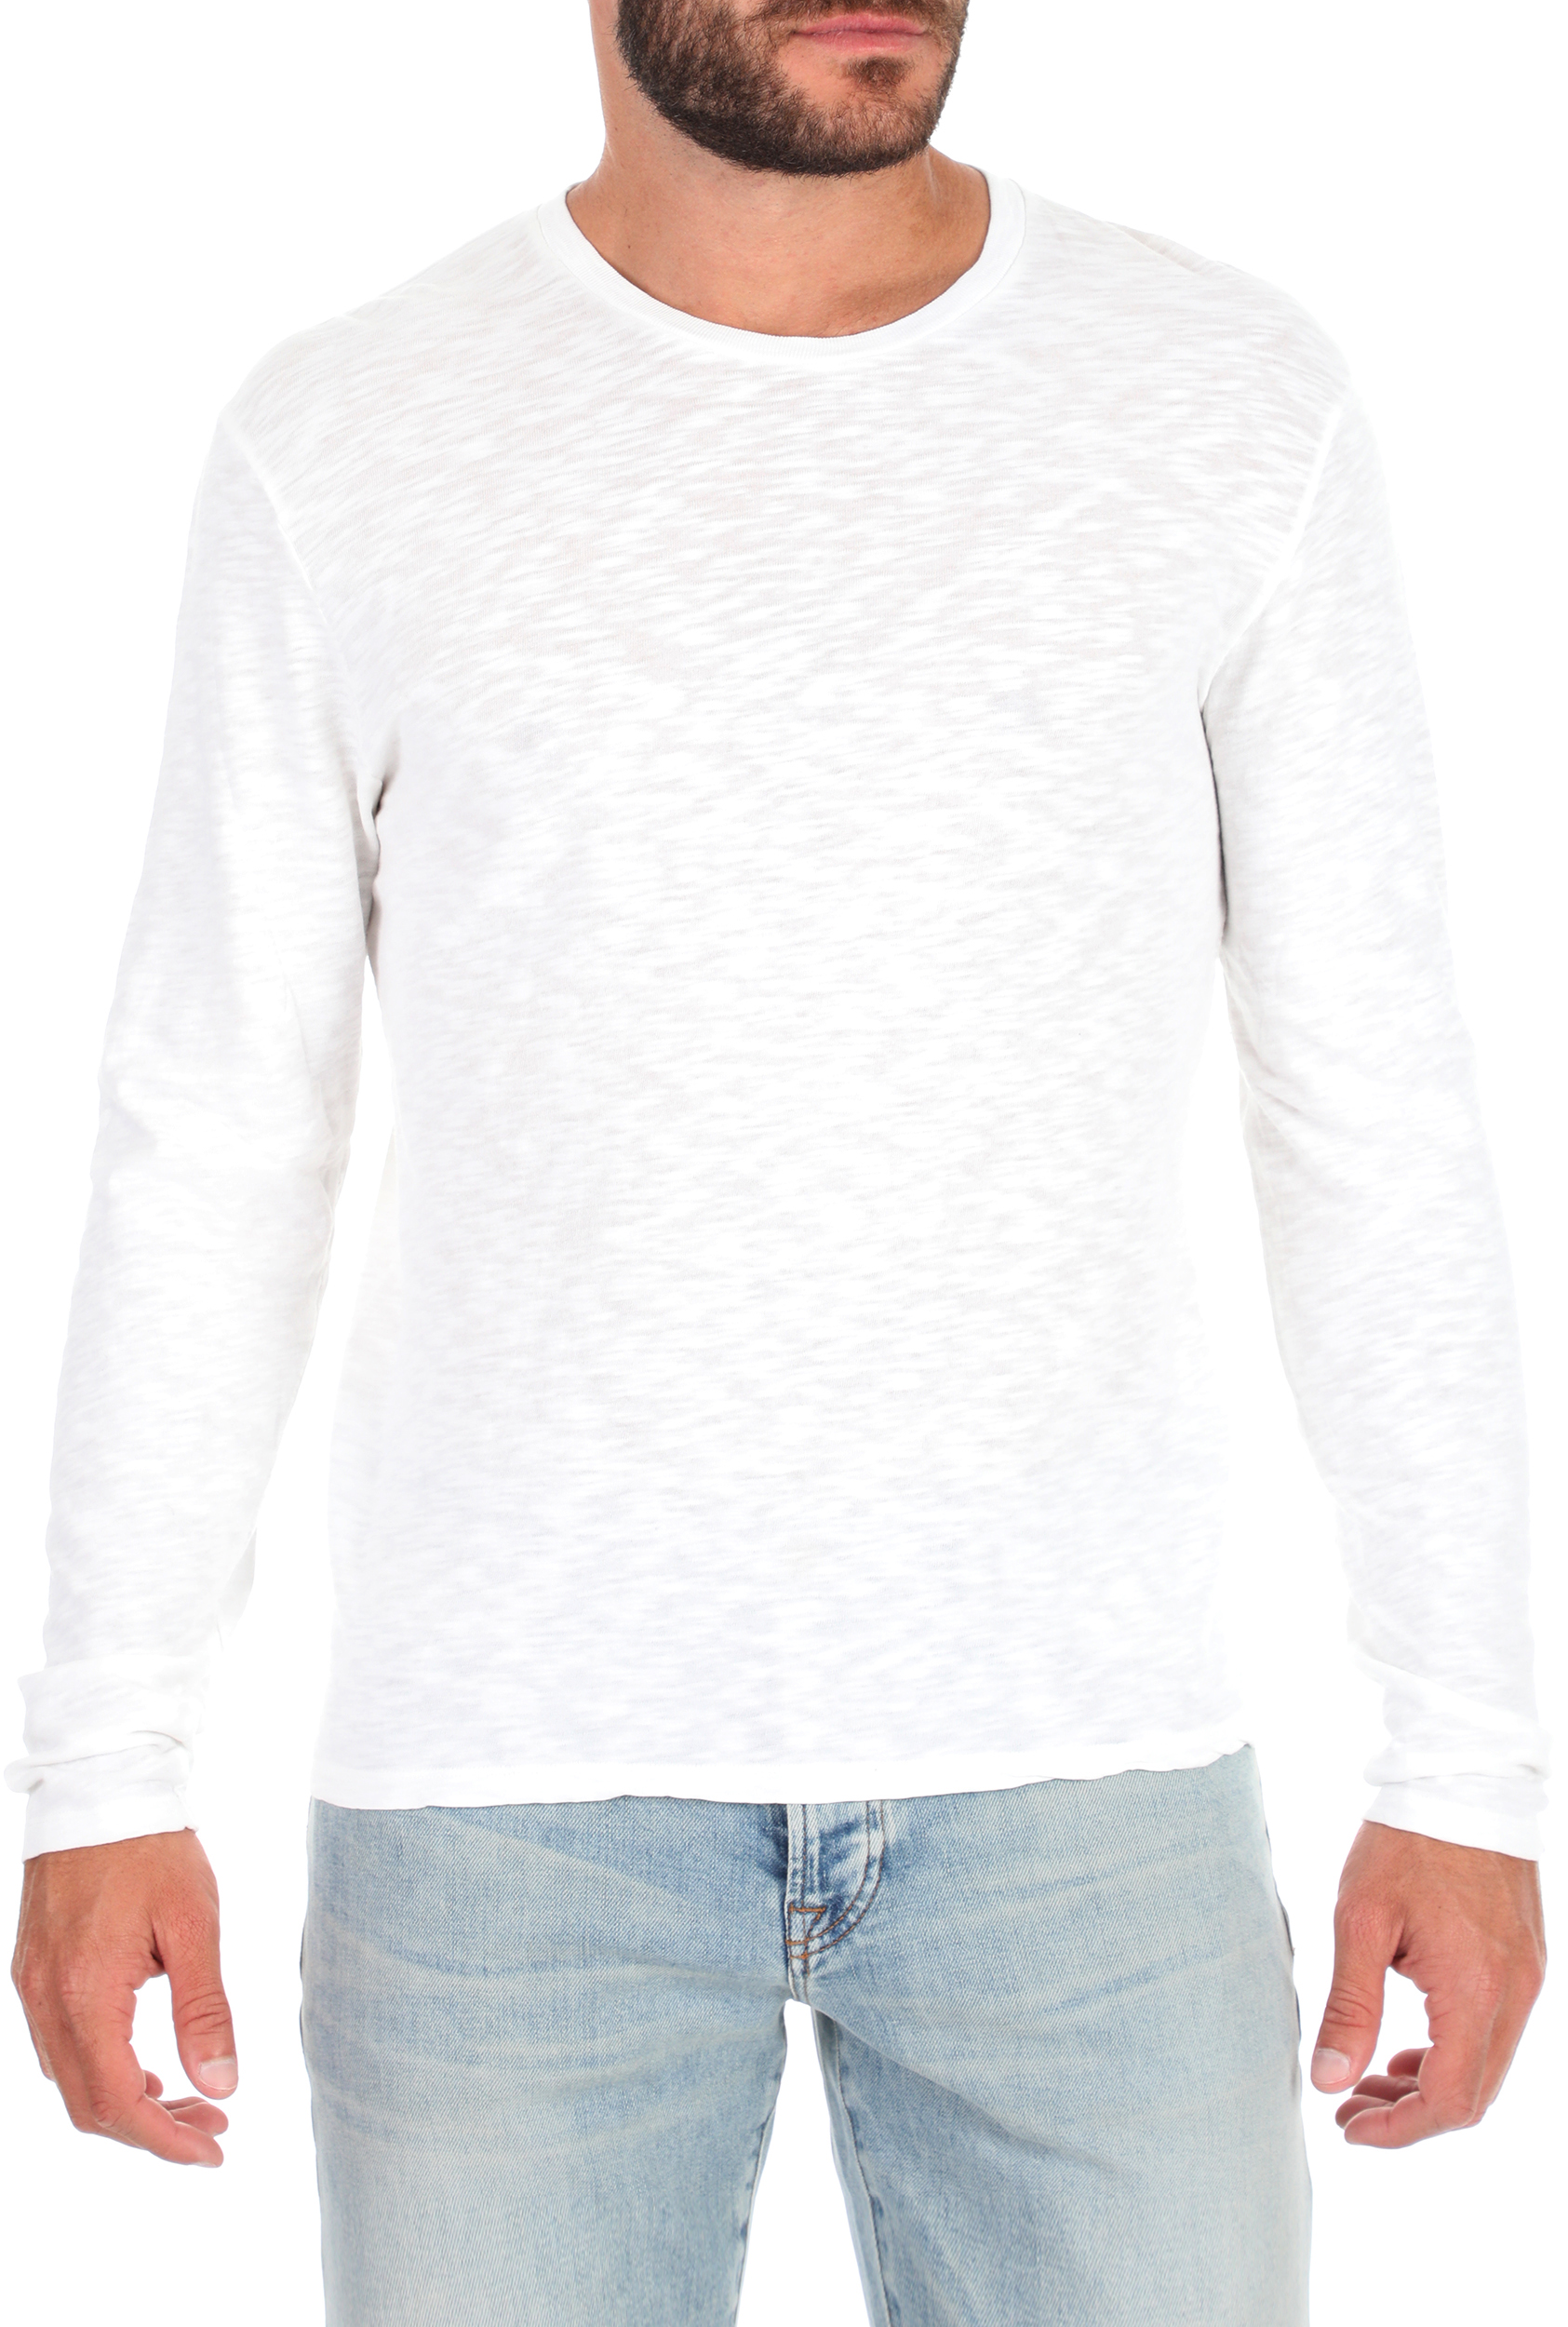 Ανδρικά/Ρούχα/Μπλούζες/Μακρυμάνικες AMERICAN VINTAGE - Ανδρική μπλούζα AMERICAN VINTAGE λευκή